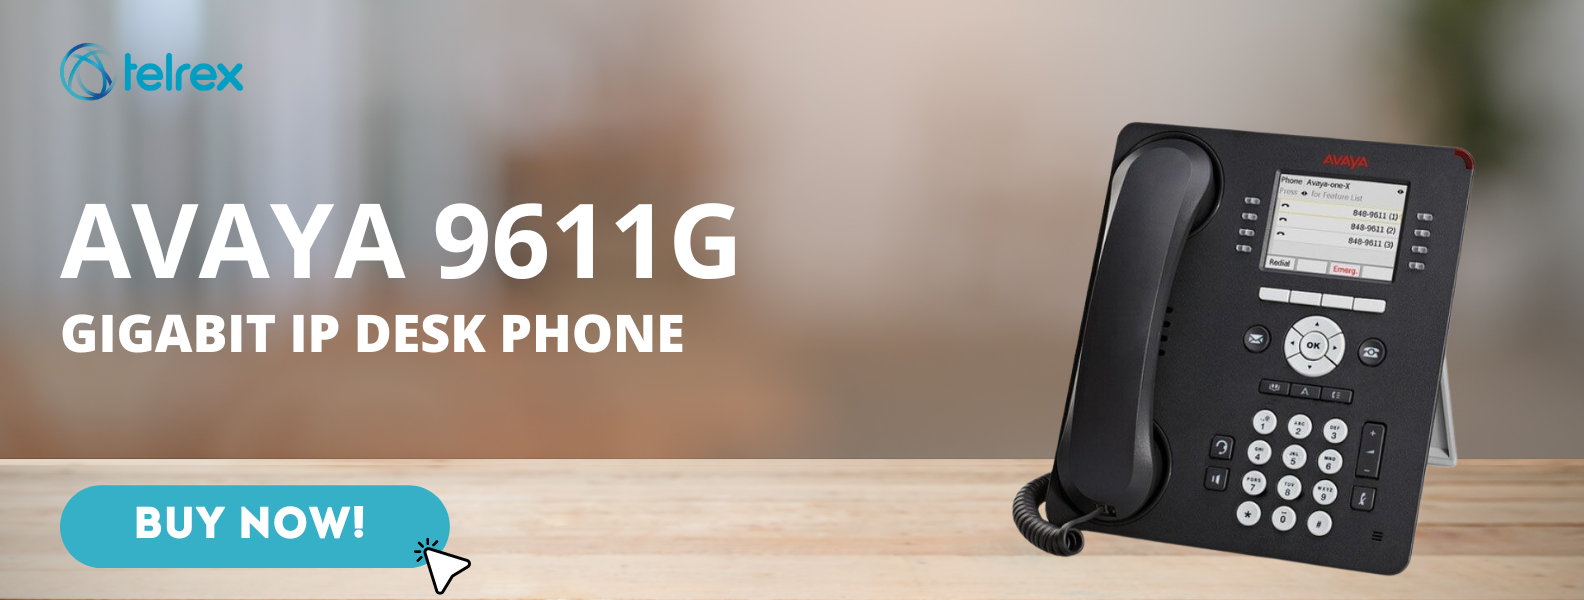 Avaya 9611G Gigabit IP Desk Phone